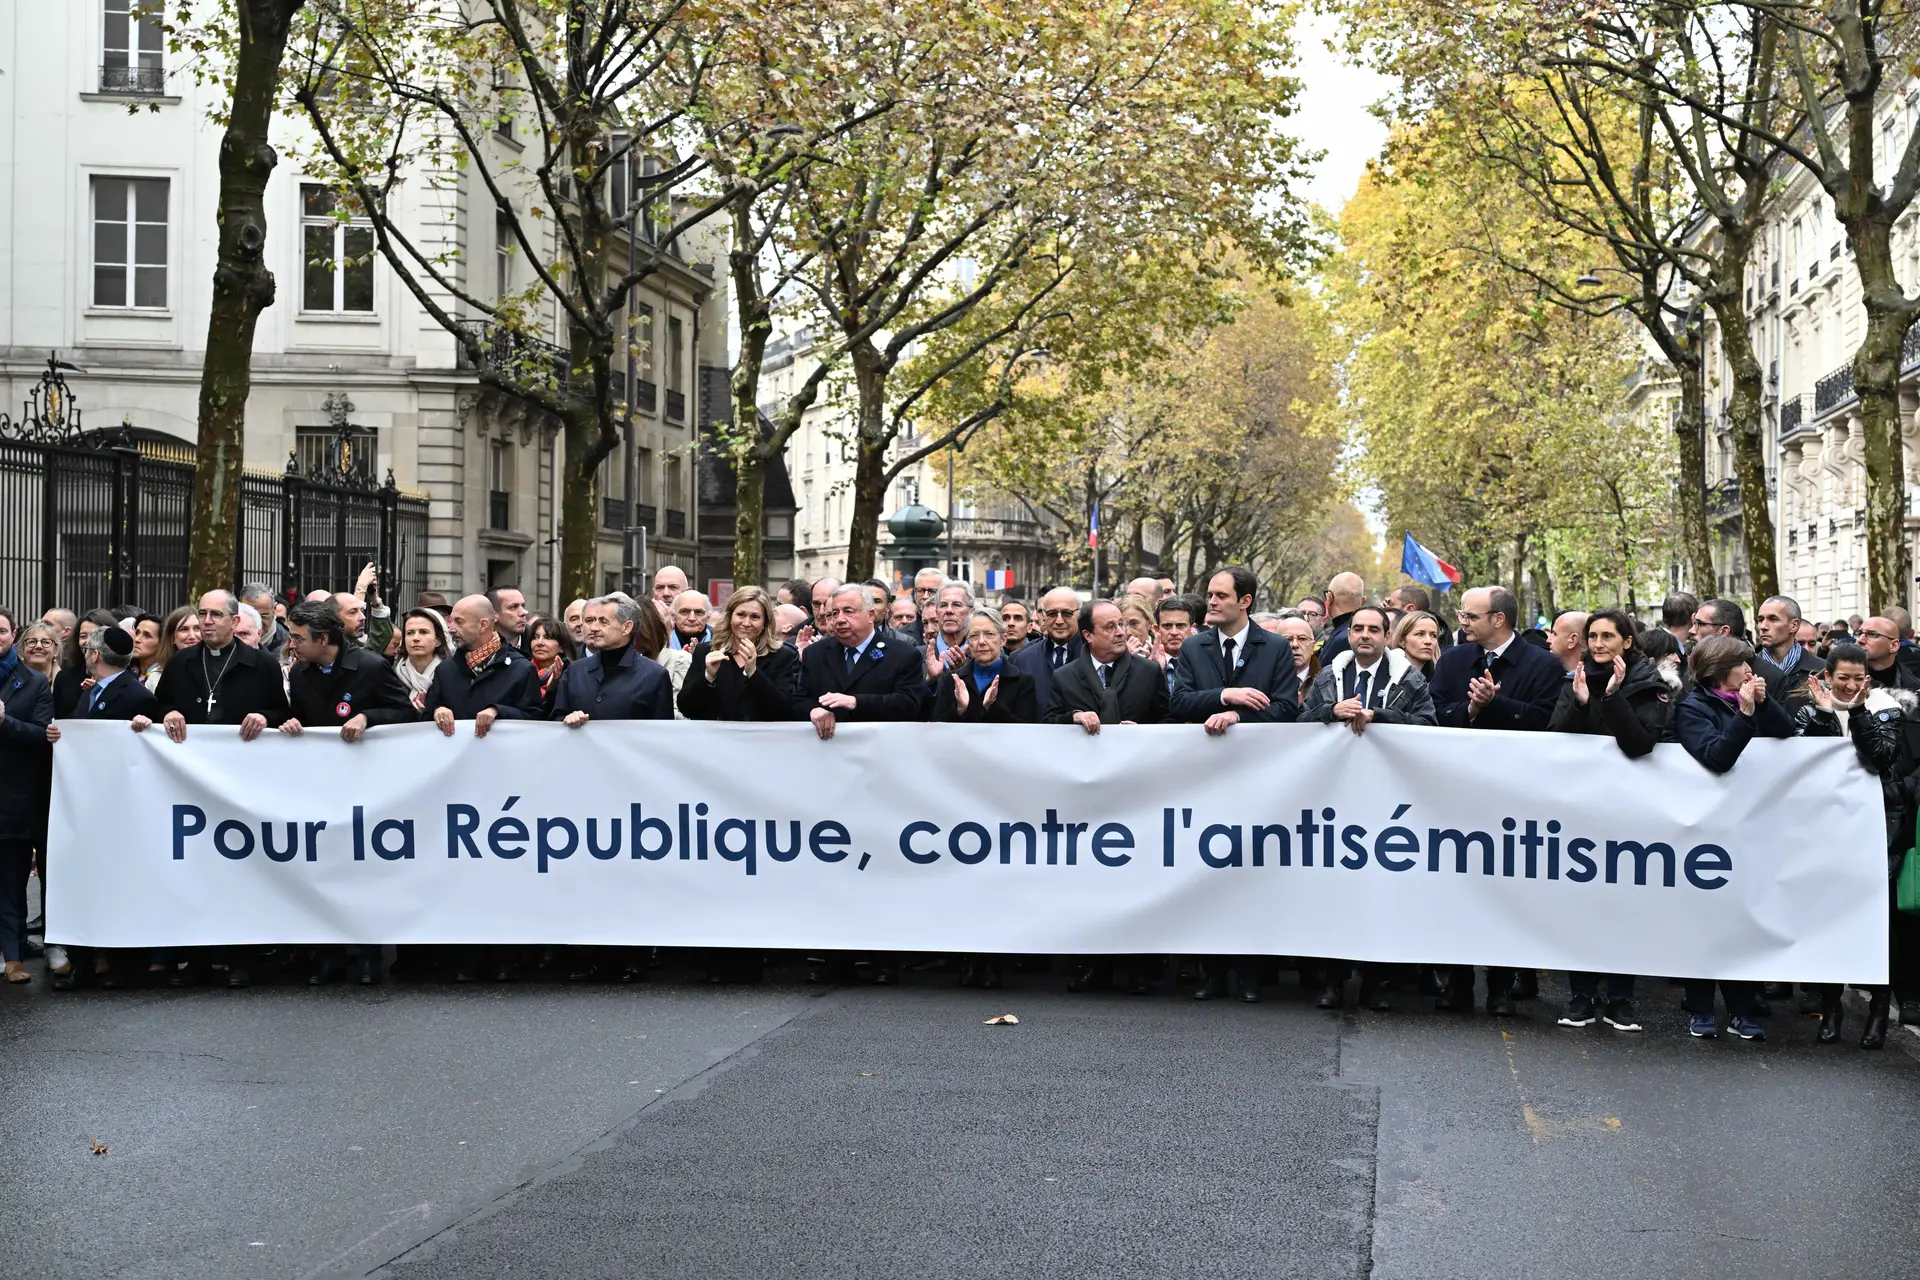 Guerra Israel-Hamas. Políticos franceses participam em manifestação contra  antissemitismo - Expresso